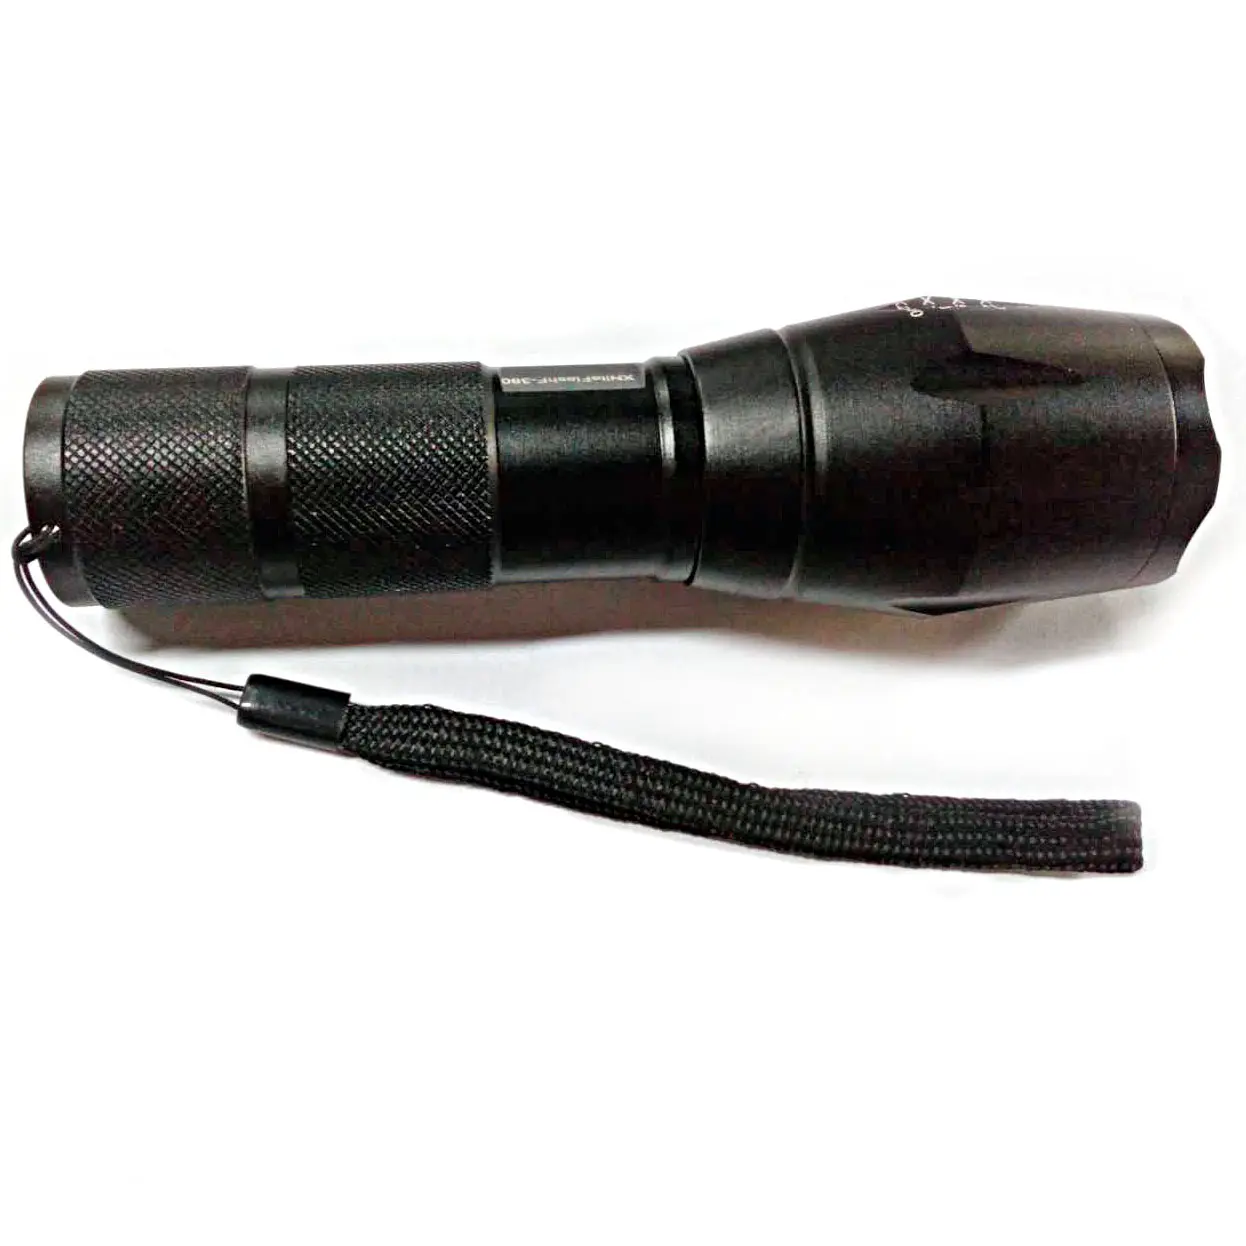 1 Wát 365nm UV đèn pin uv Torch Led đèn pin